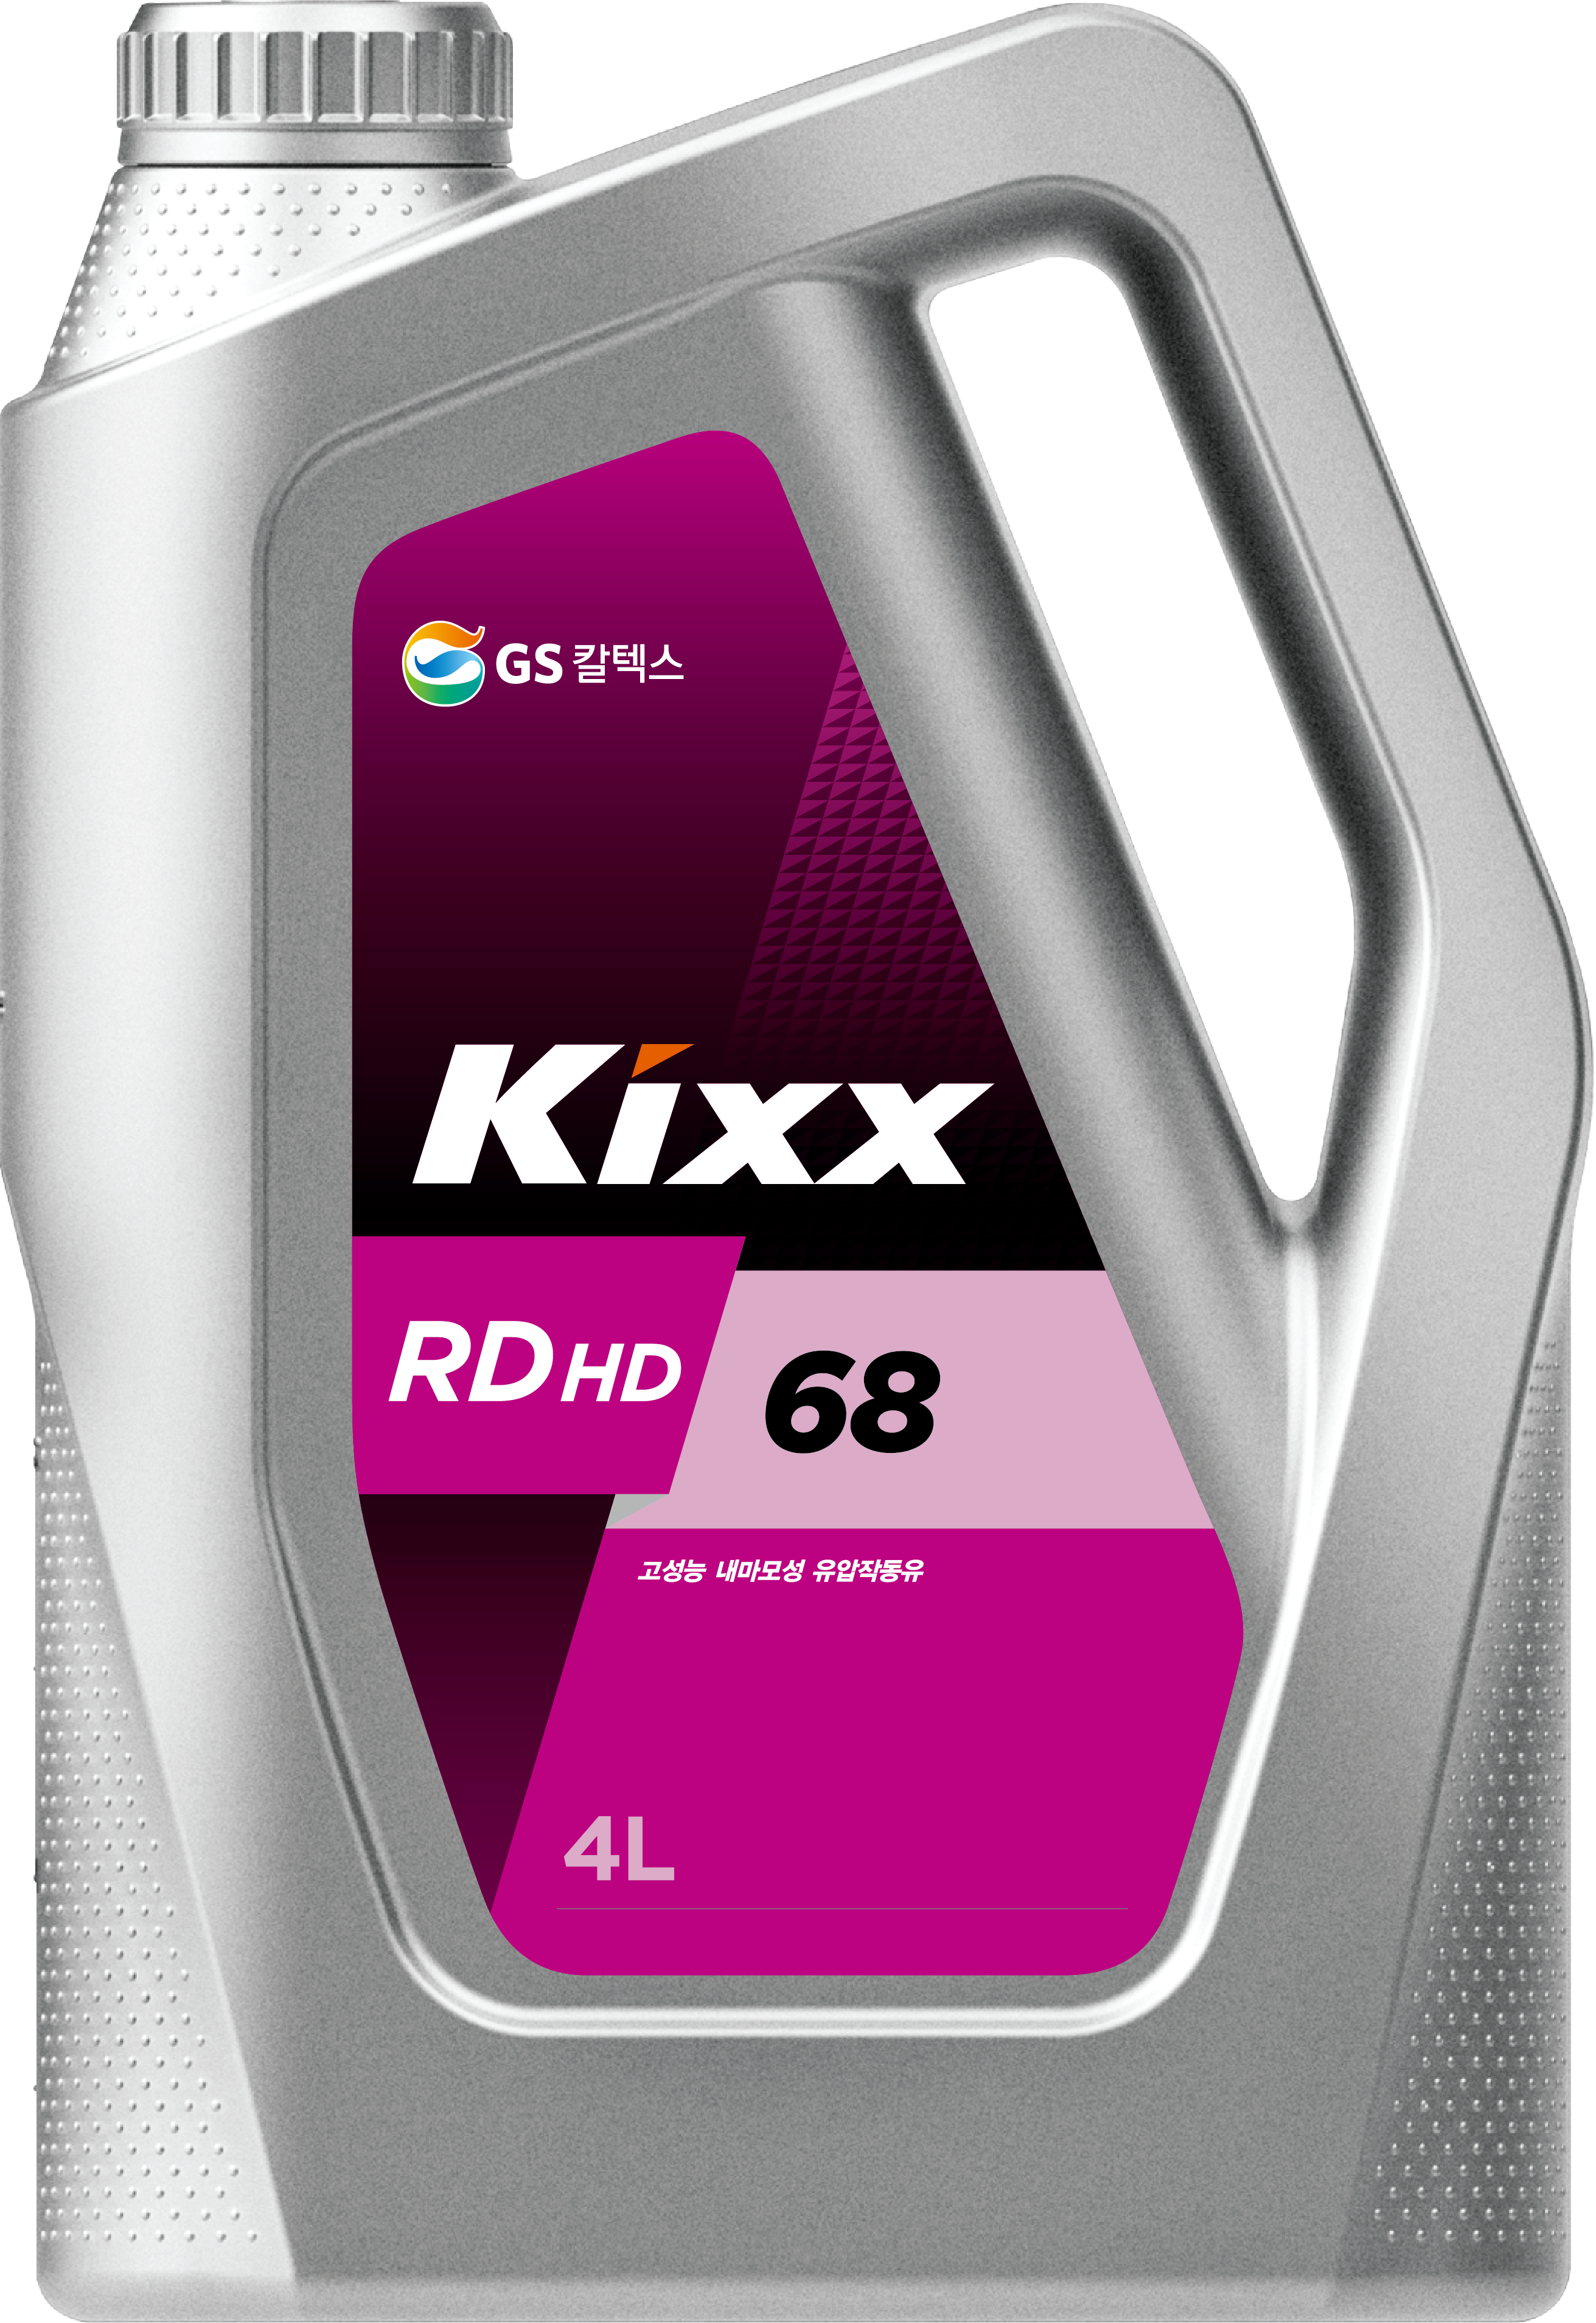 Kixx RD HD 68